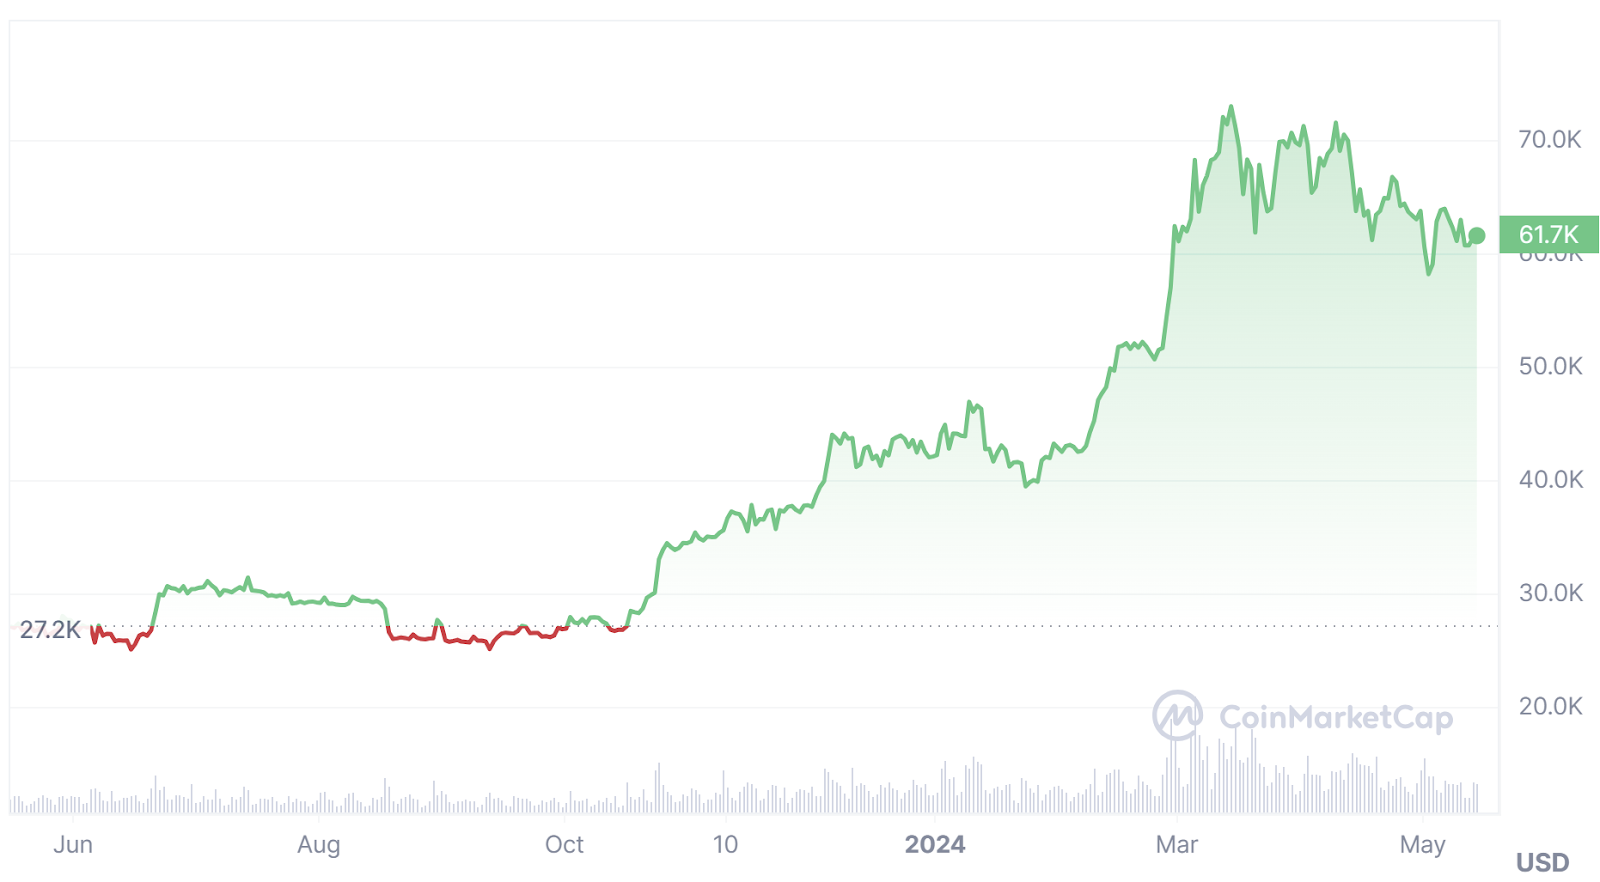 Bitcoin 12 month price chart via CoinMarketCap